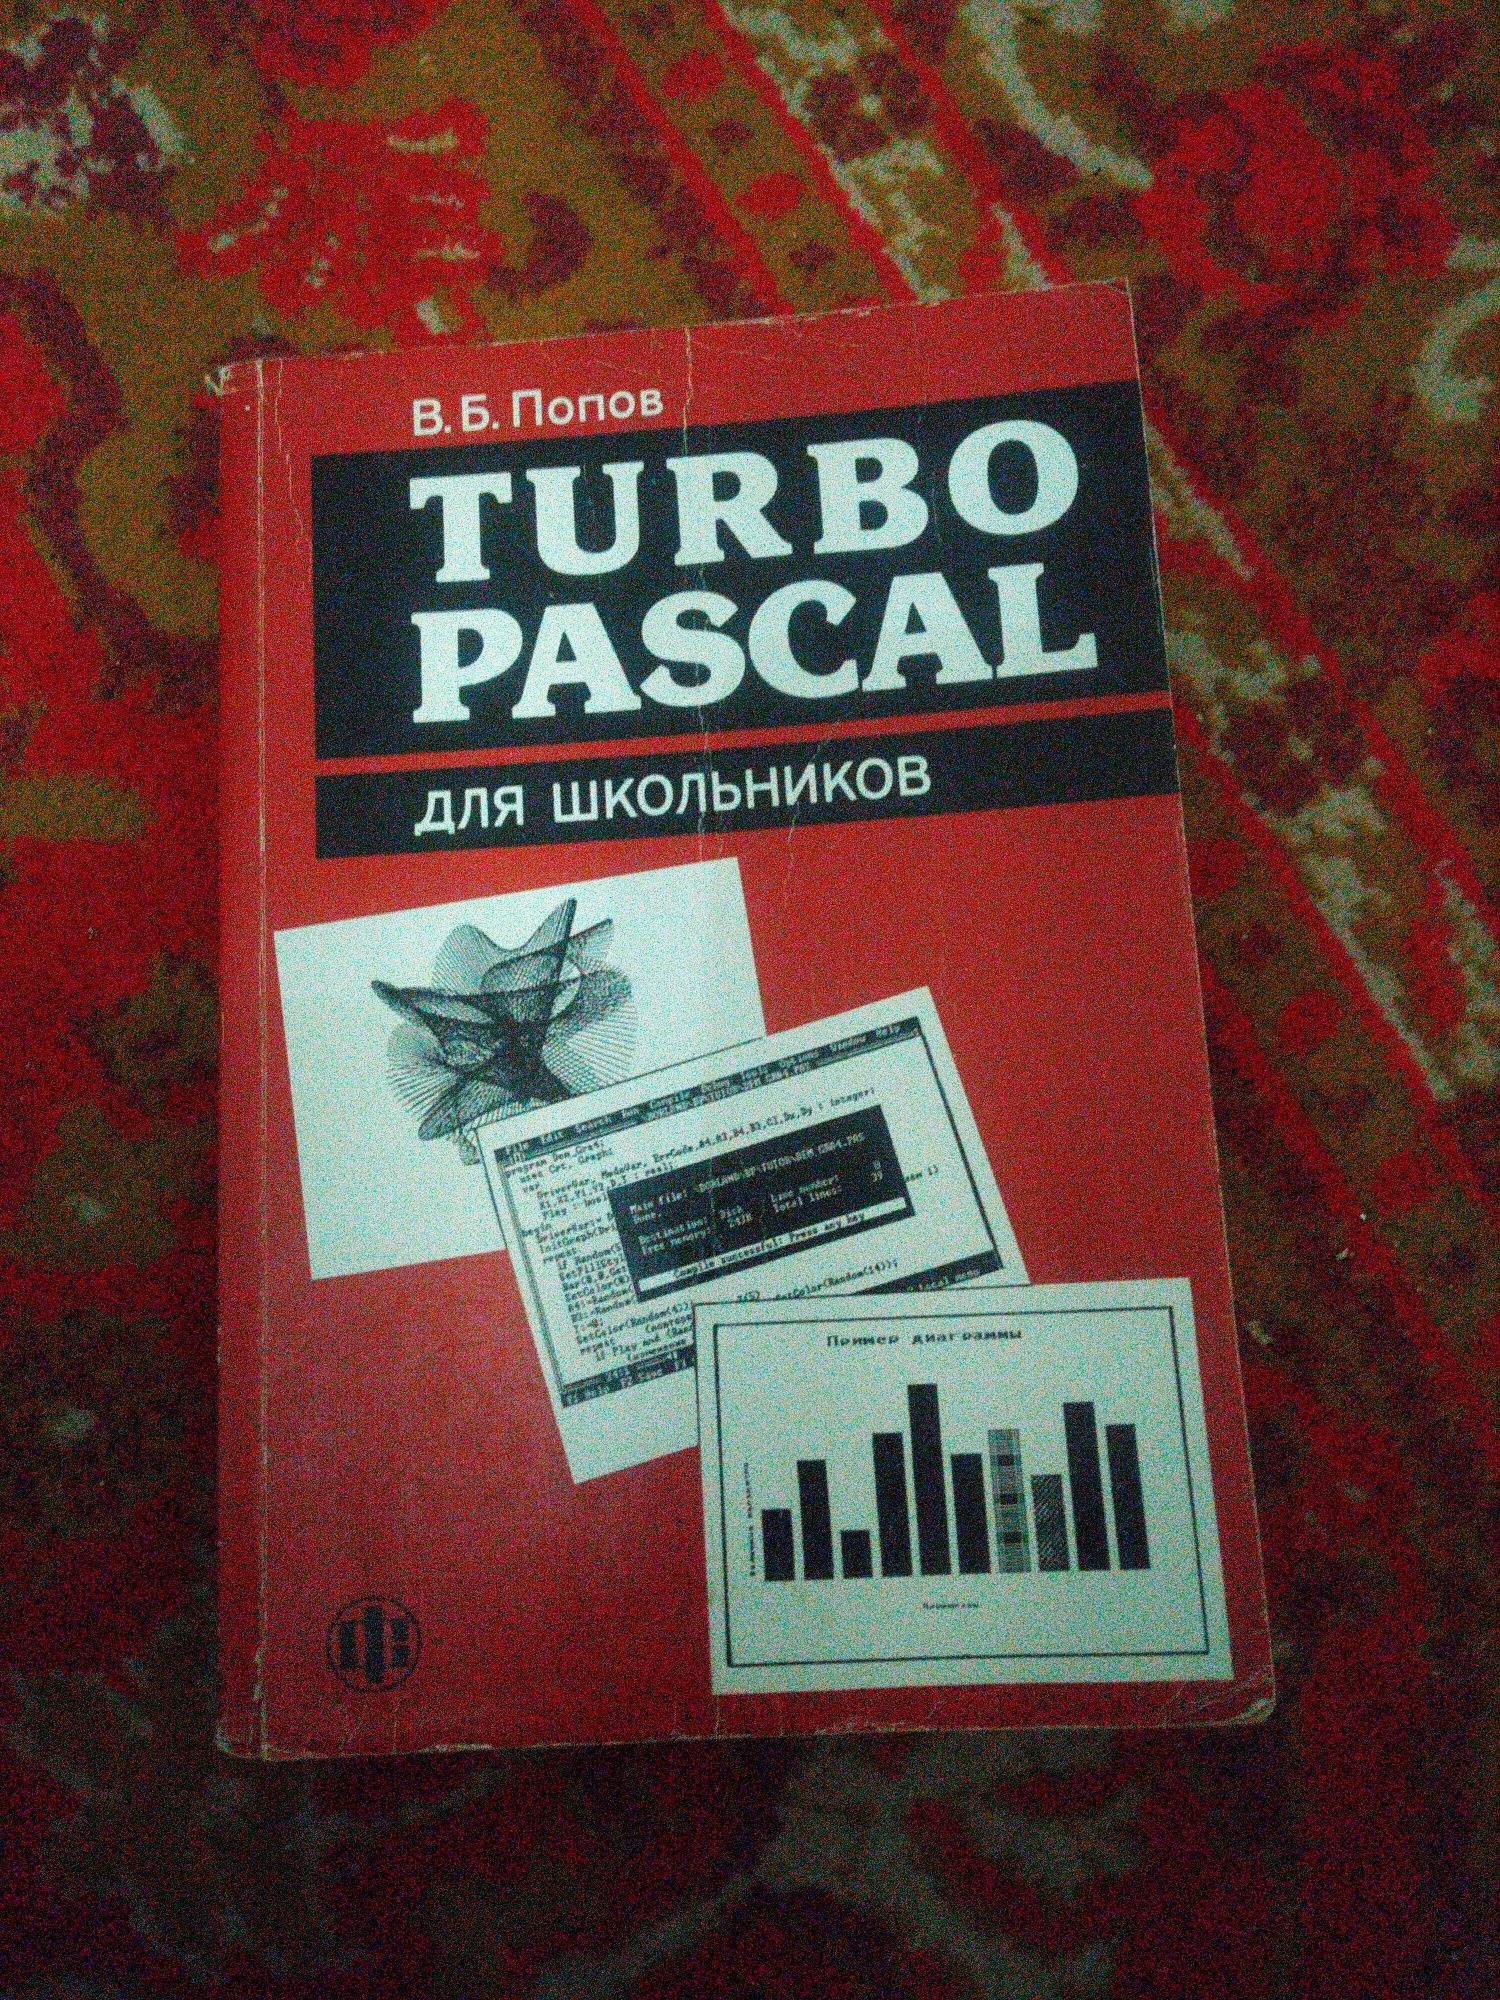 Продам книгу Turbo pascal для школьников, автор В.Б. Попов.